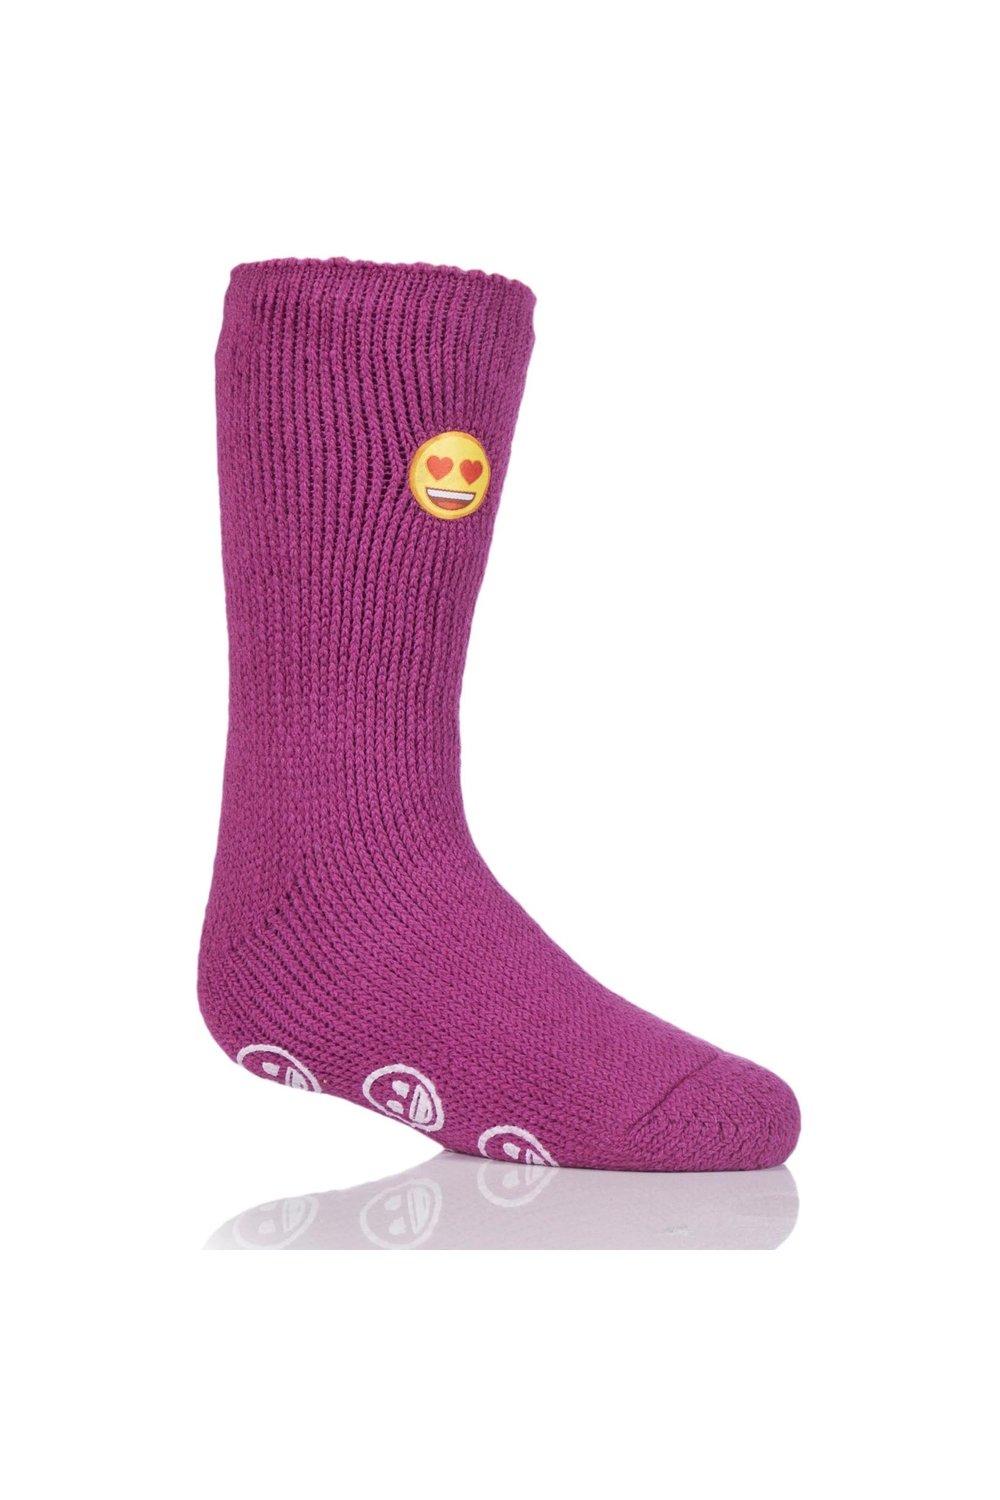 1 пара носков-тапочек с сердечками и смайликами SOCKSHOP Heat Holders, розовый 1 пара полосатых носков тапочек gripper со скидкой 25% на этот стиль sockshop синий